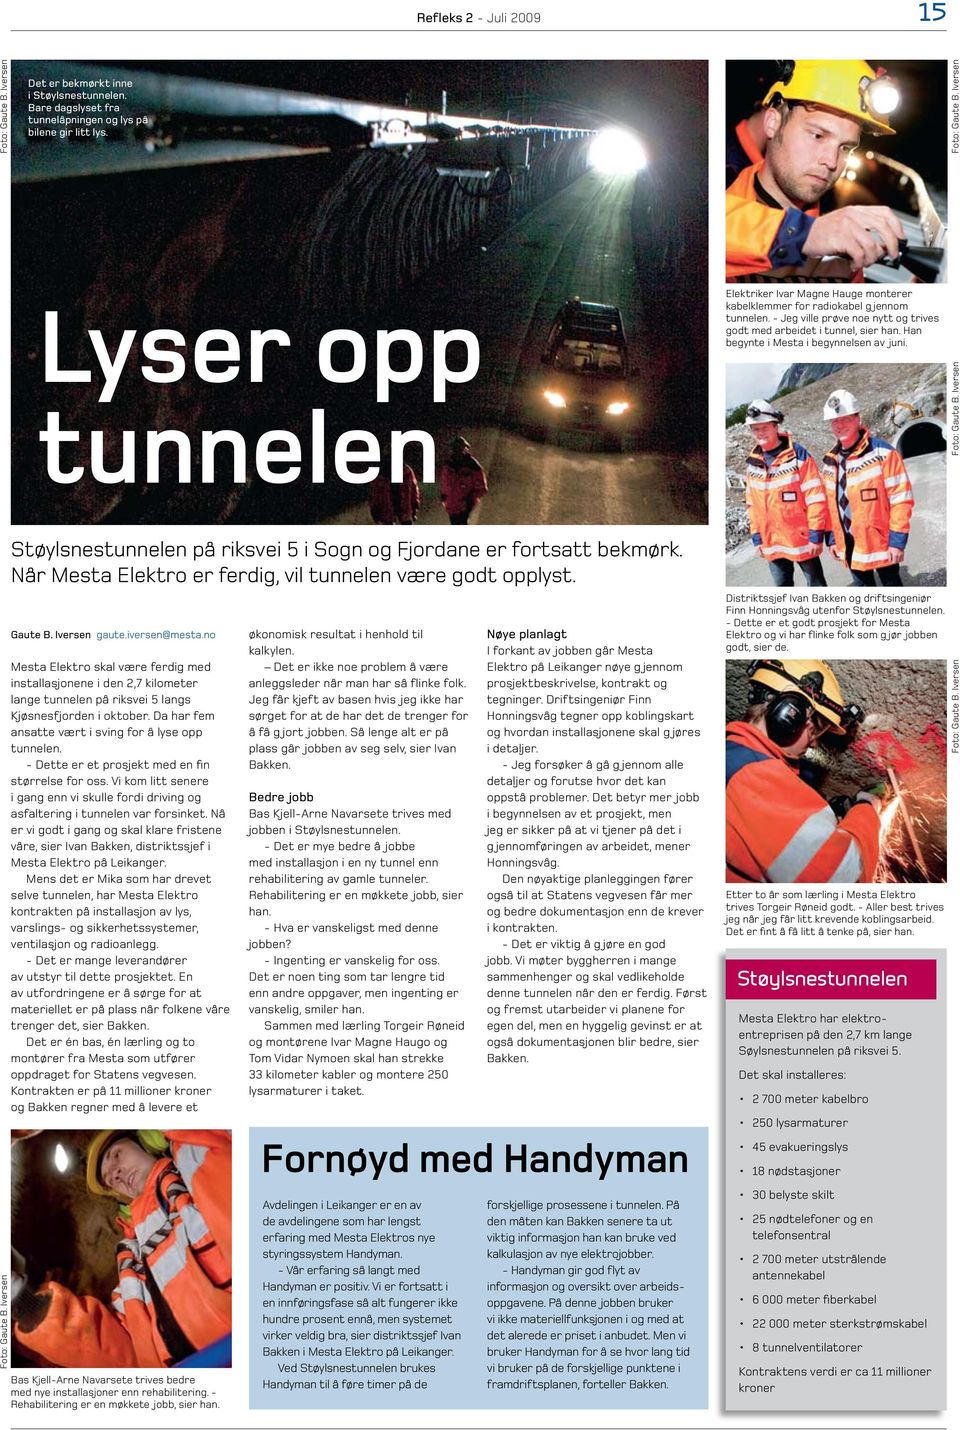 no Mesta Elektro skal være ferdig med installasjonene i den 2,7 kilometer lange tunnelen på riksvei 5 langs Kjøsnesfjorden i oktober. Da har fem ansatte vært i sving for å lyse opp tunnelen.